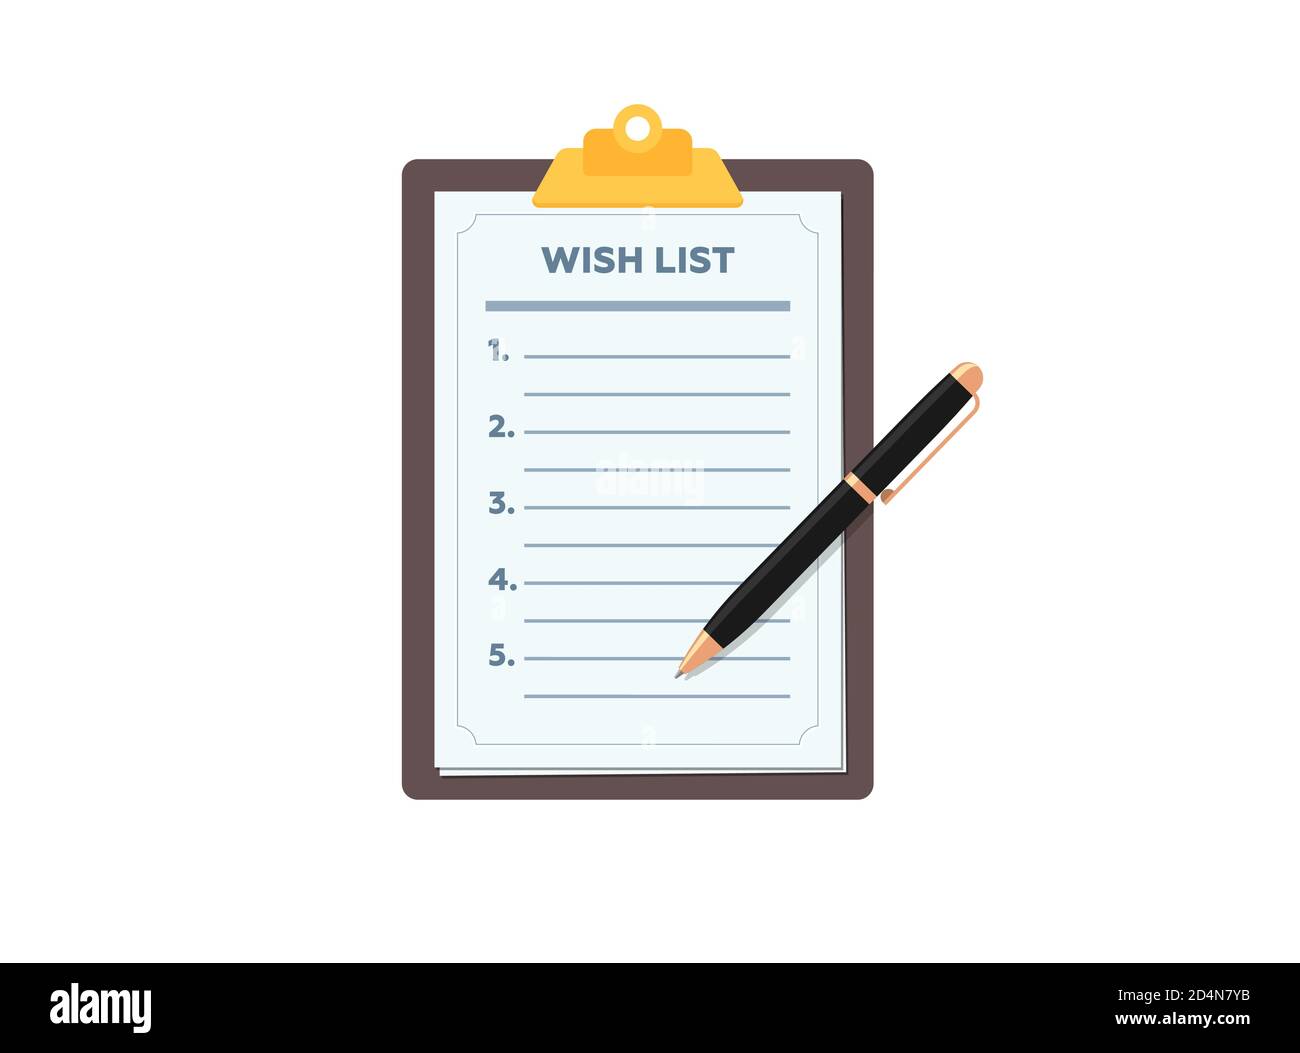 Zwischenablage mit leerer Wunschliste und Stift. Wunschliste Form Papier flach eps Vektor Illustration Zeichen Stock Vektor